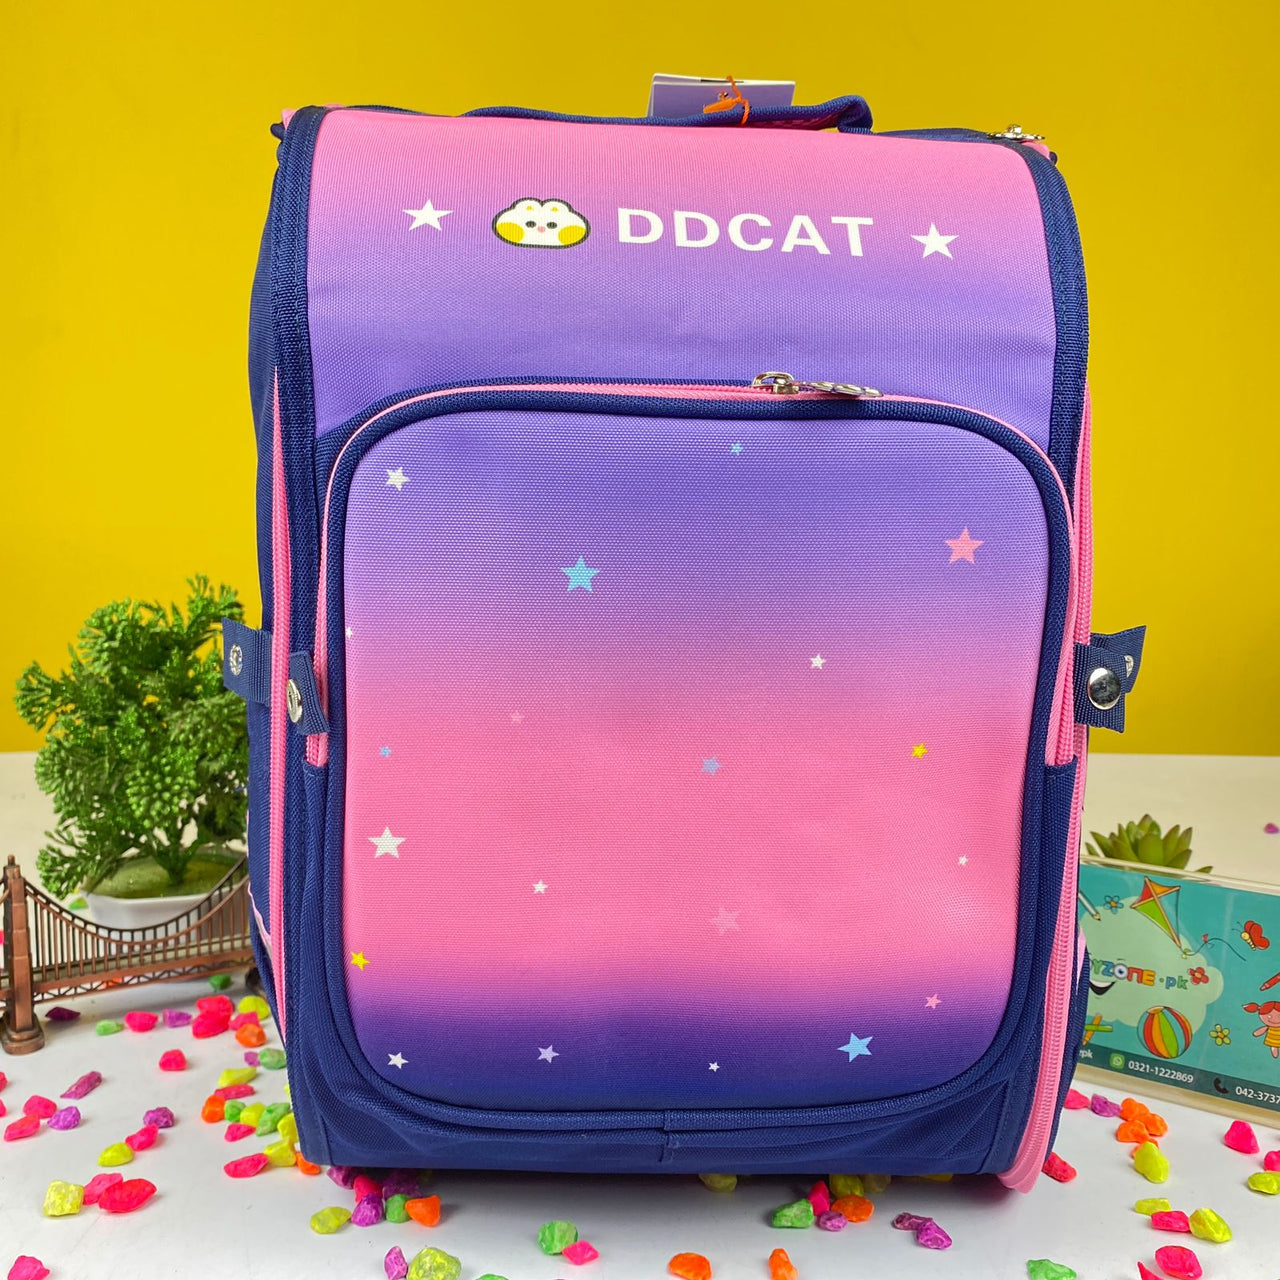 ddcat-school-backpack